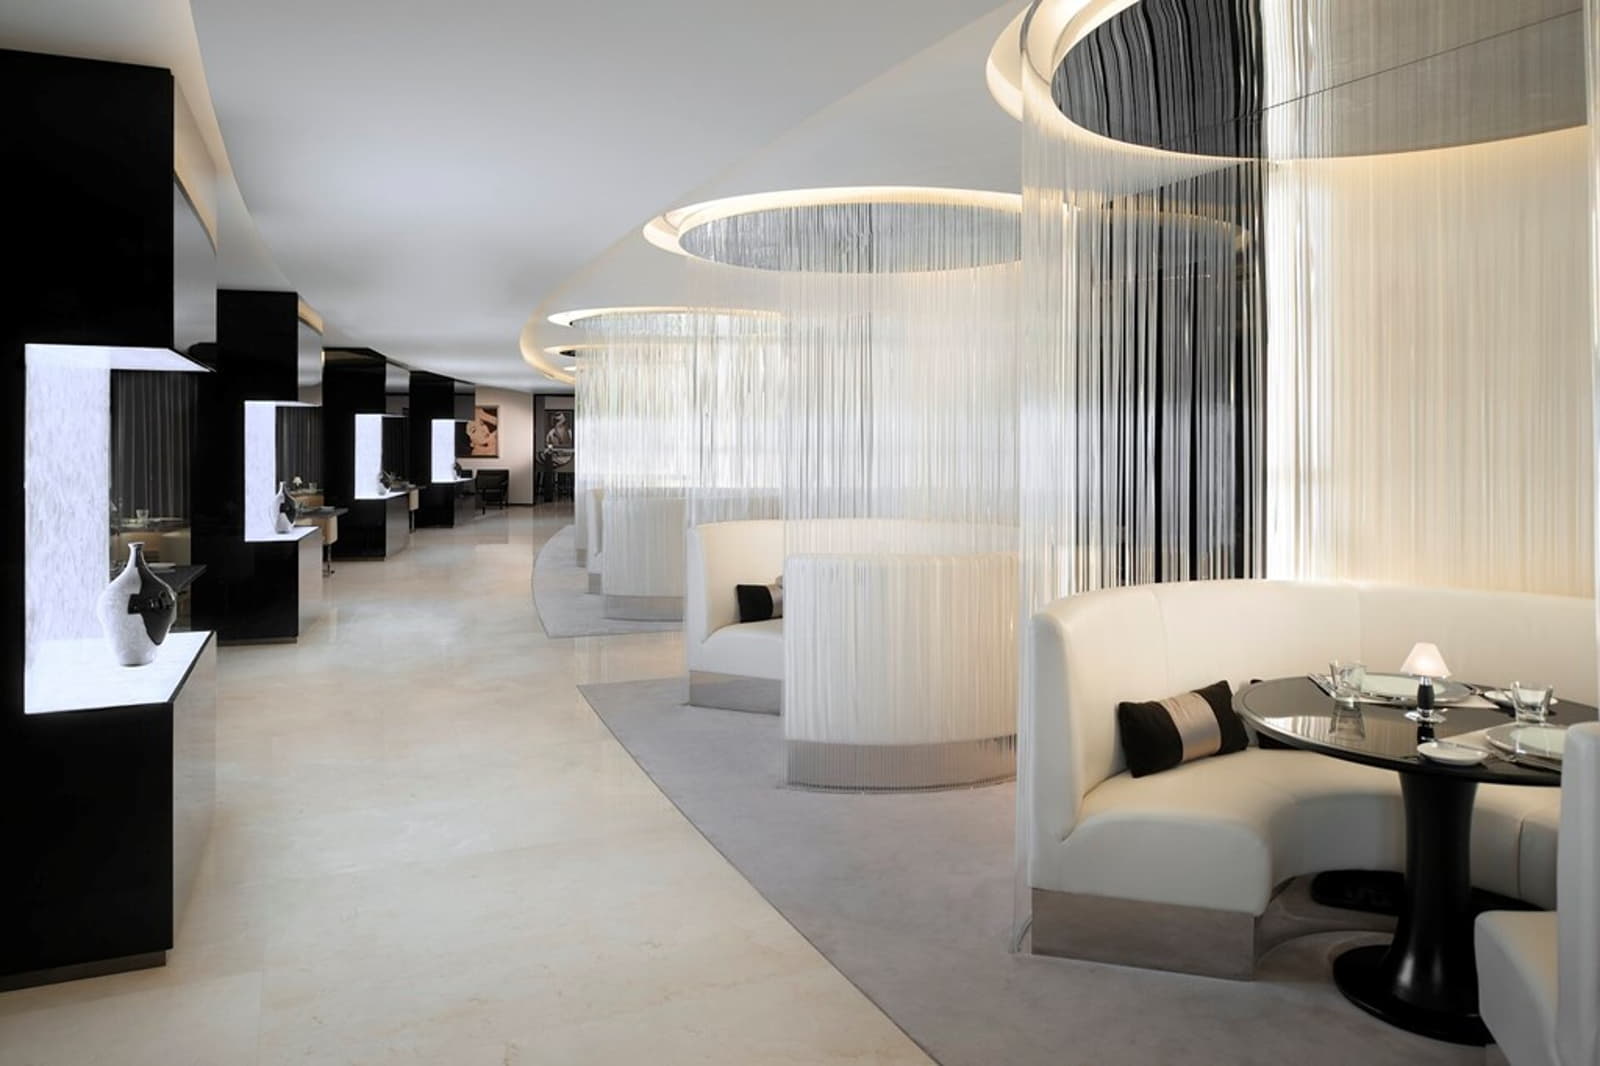 Ξενοδοχείο στο Ντουμπάι-Jw marriott marquis lounge